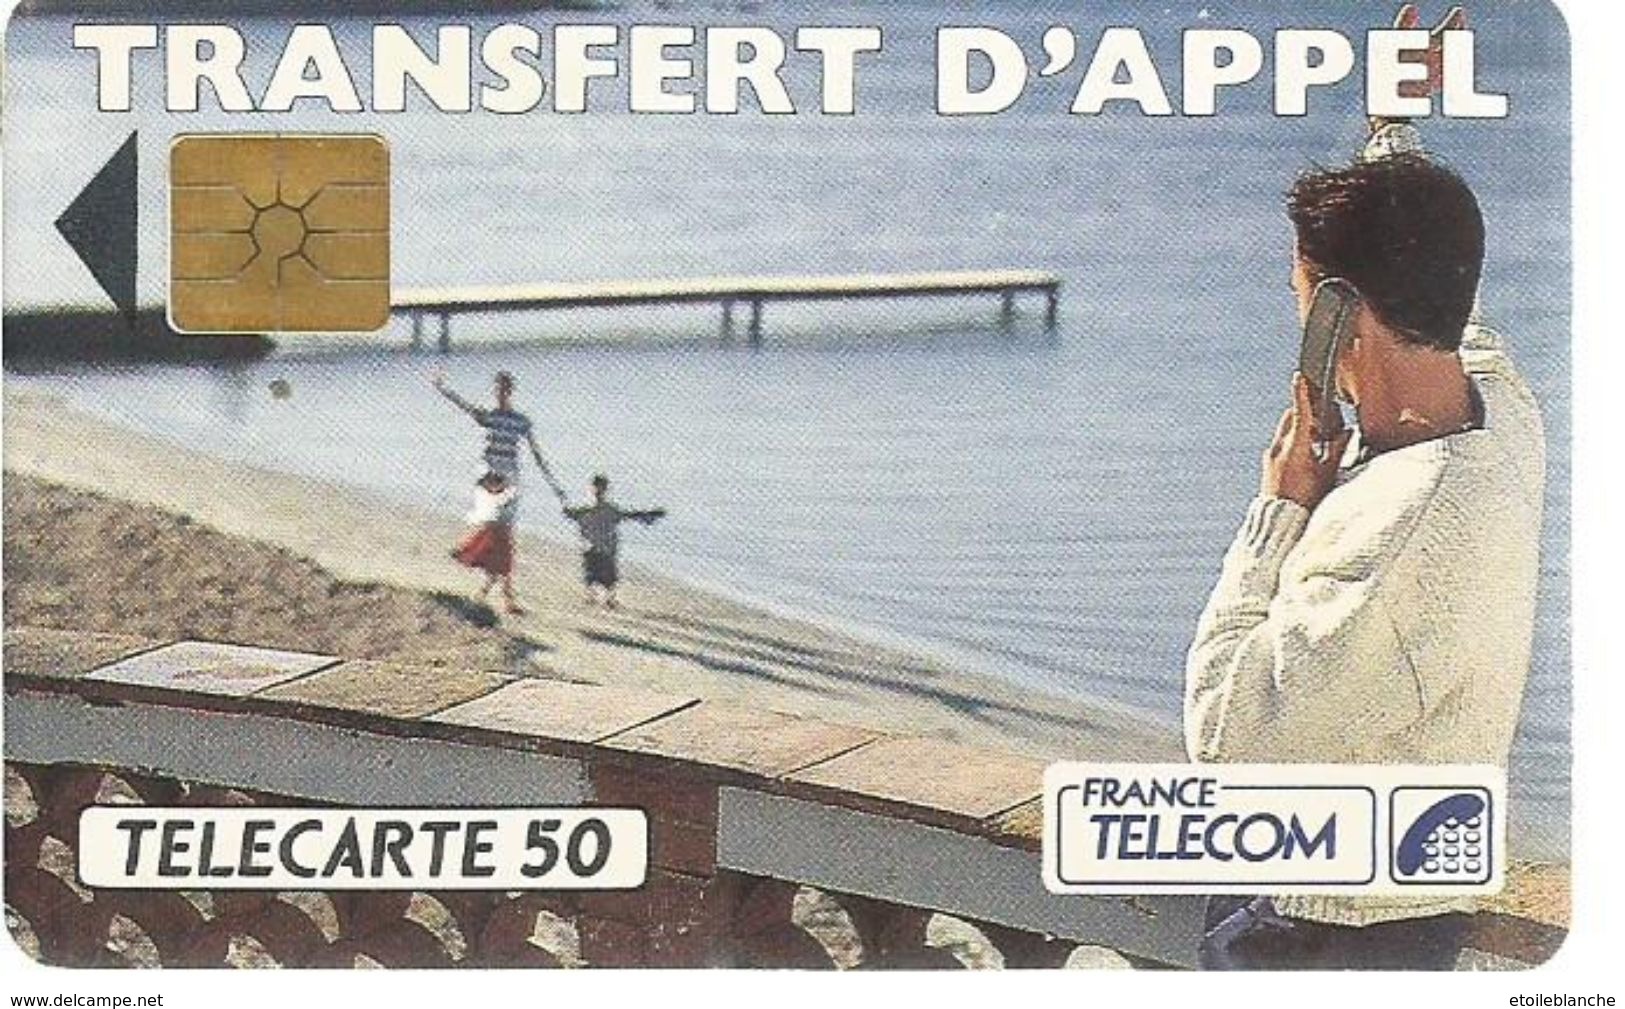 Telecarte France Telecom 1992 - Publicité, Transfert D'appel - Homme En Vacances, Plage, Famille - Operatori Telecom